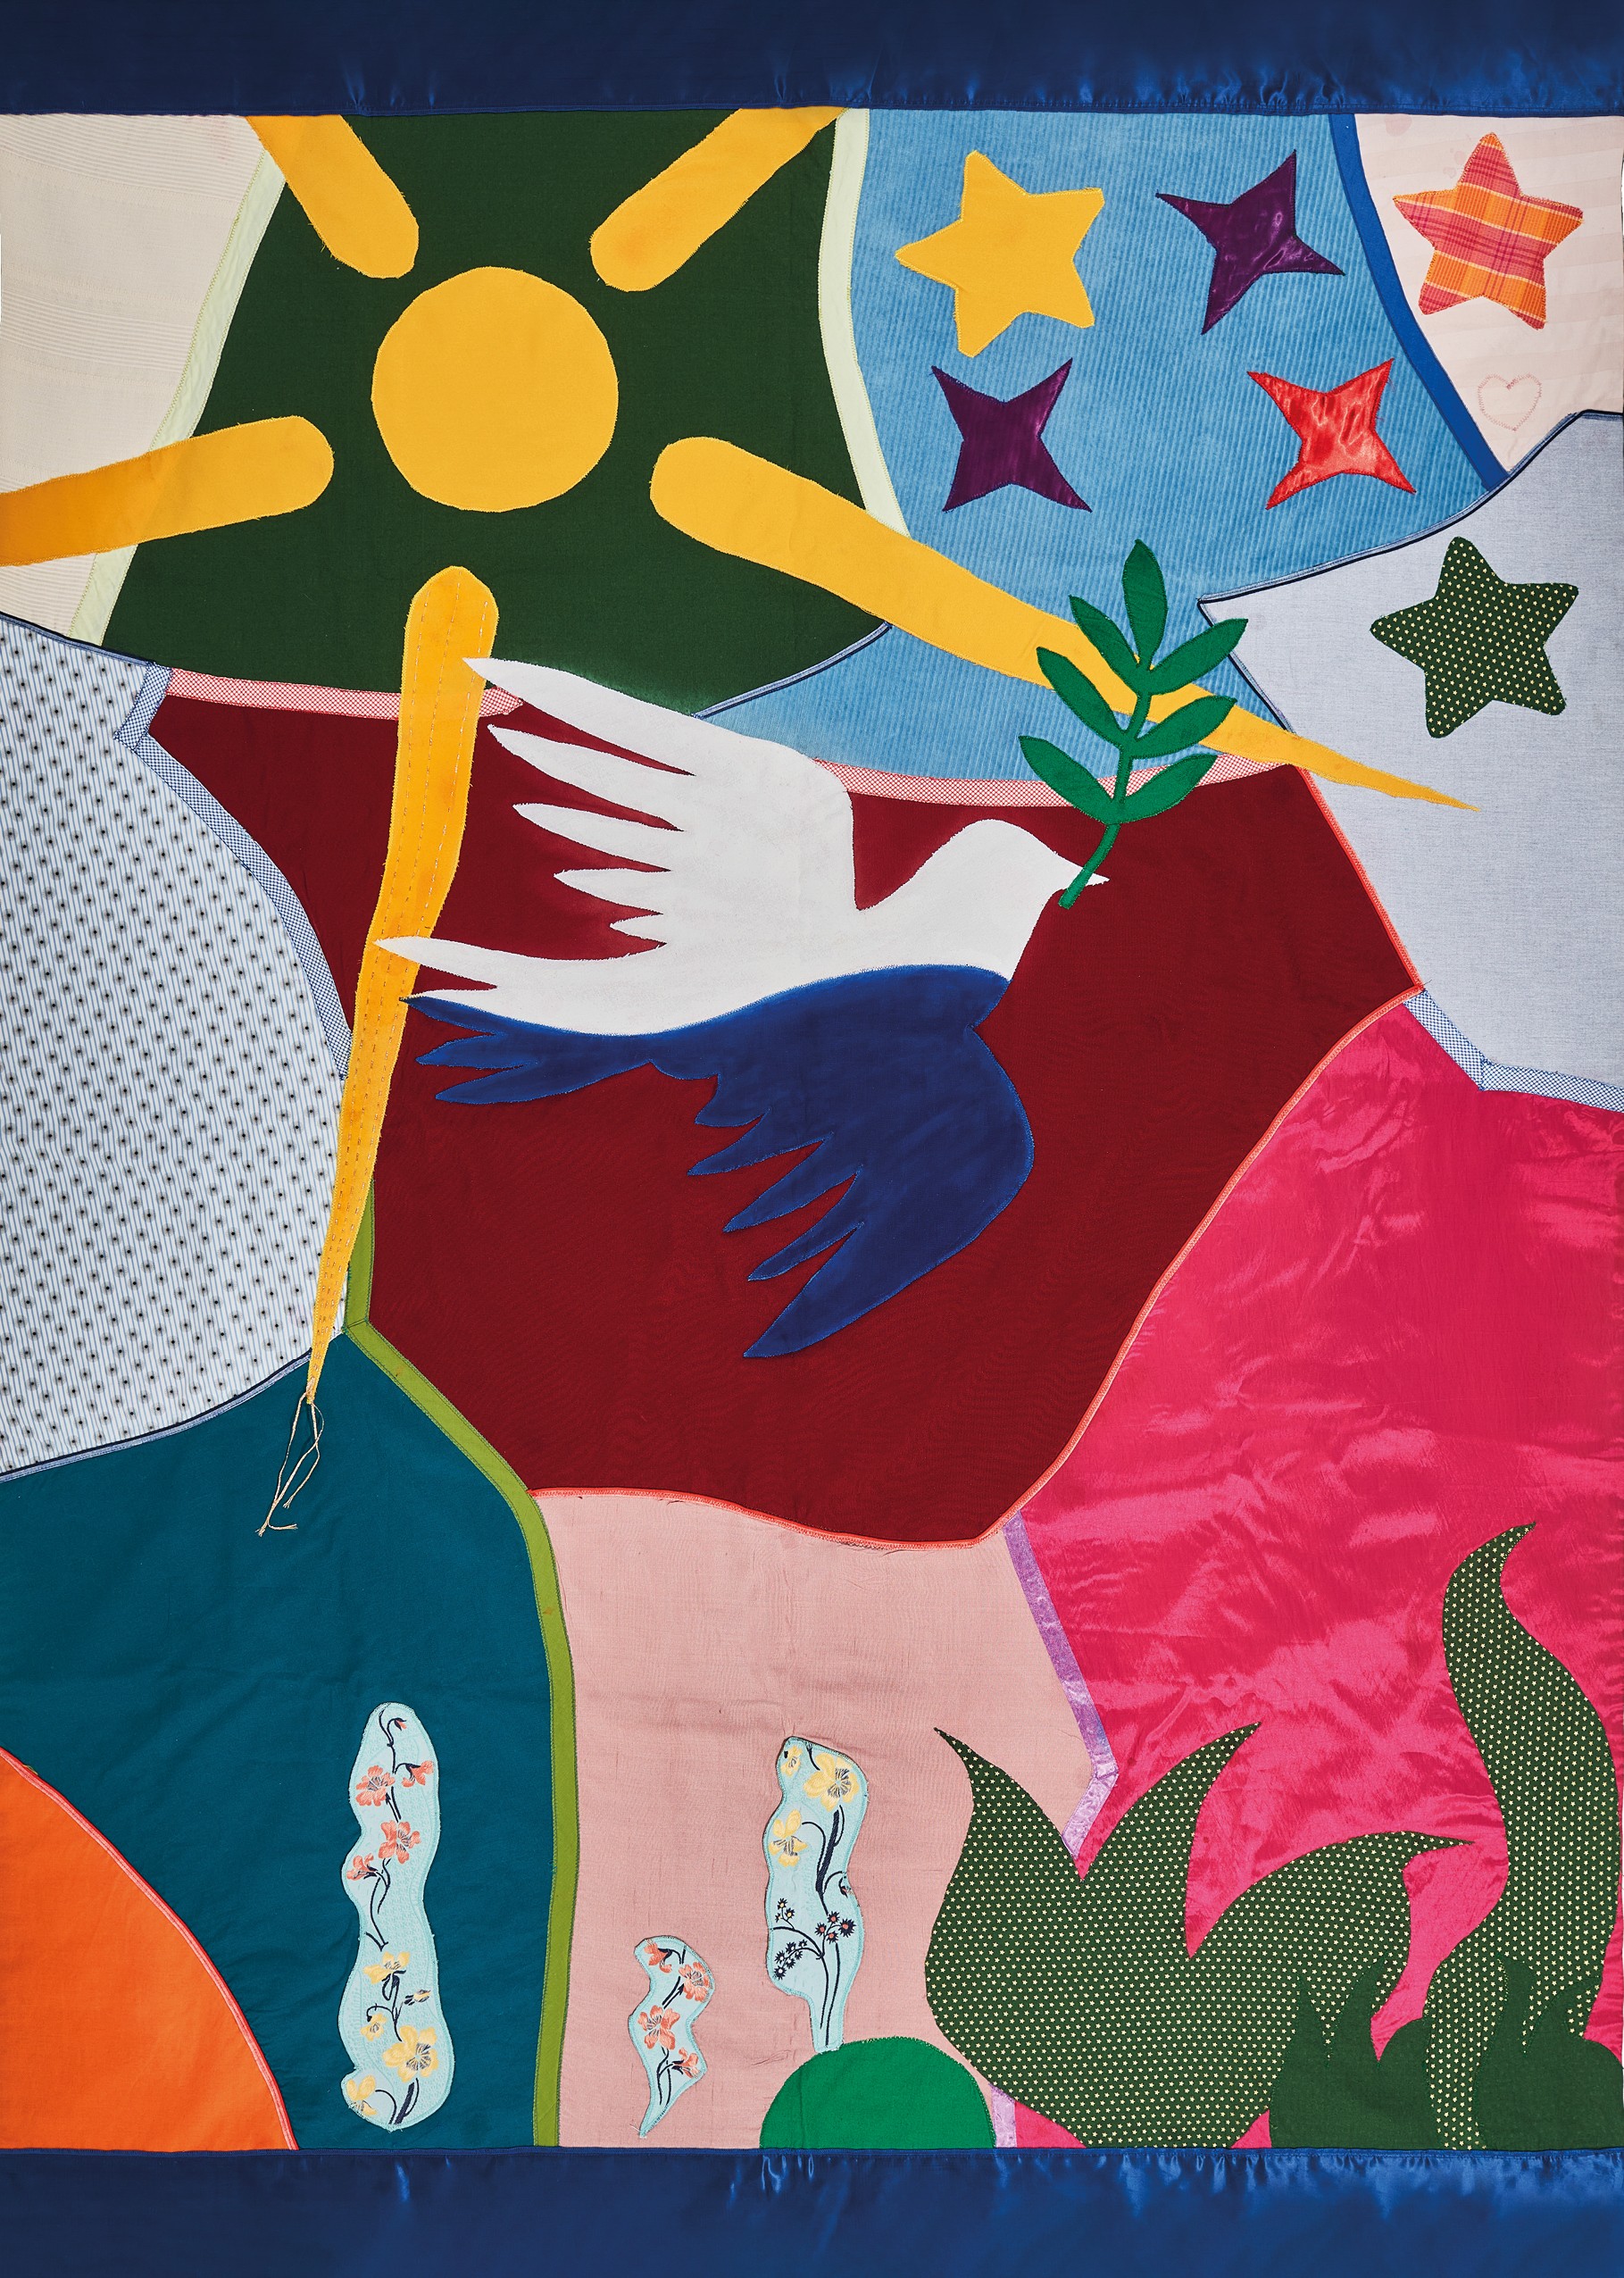 Jugendliche im kjk-Haus gestalteten mit der Künstlerin Ursula Eichert eine Friedensdecke. Das Motiv ist nun auf 2.000 Friedenspostkarten zu sehen. von kjk-Haus / Gerrit Cramer